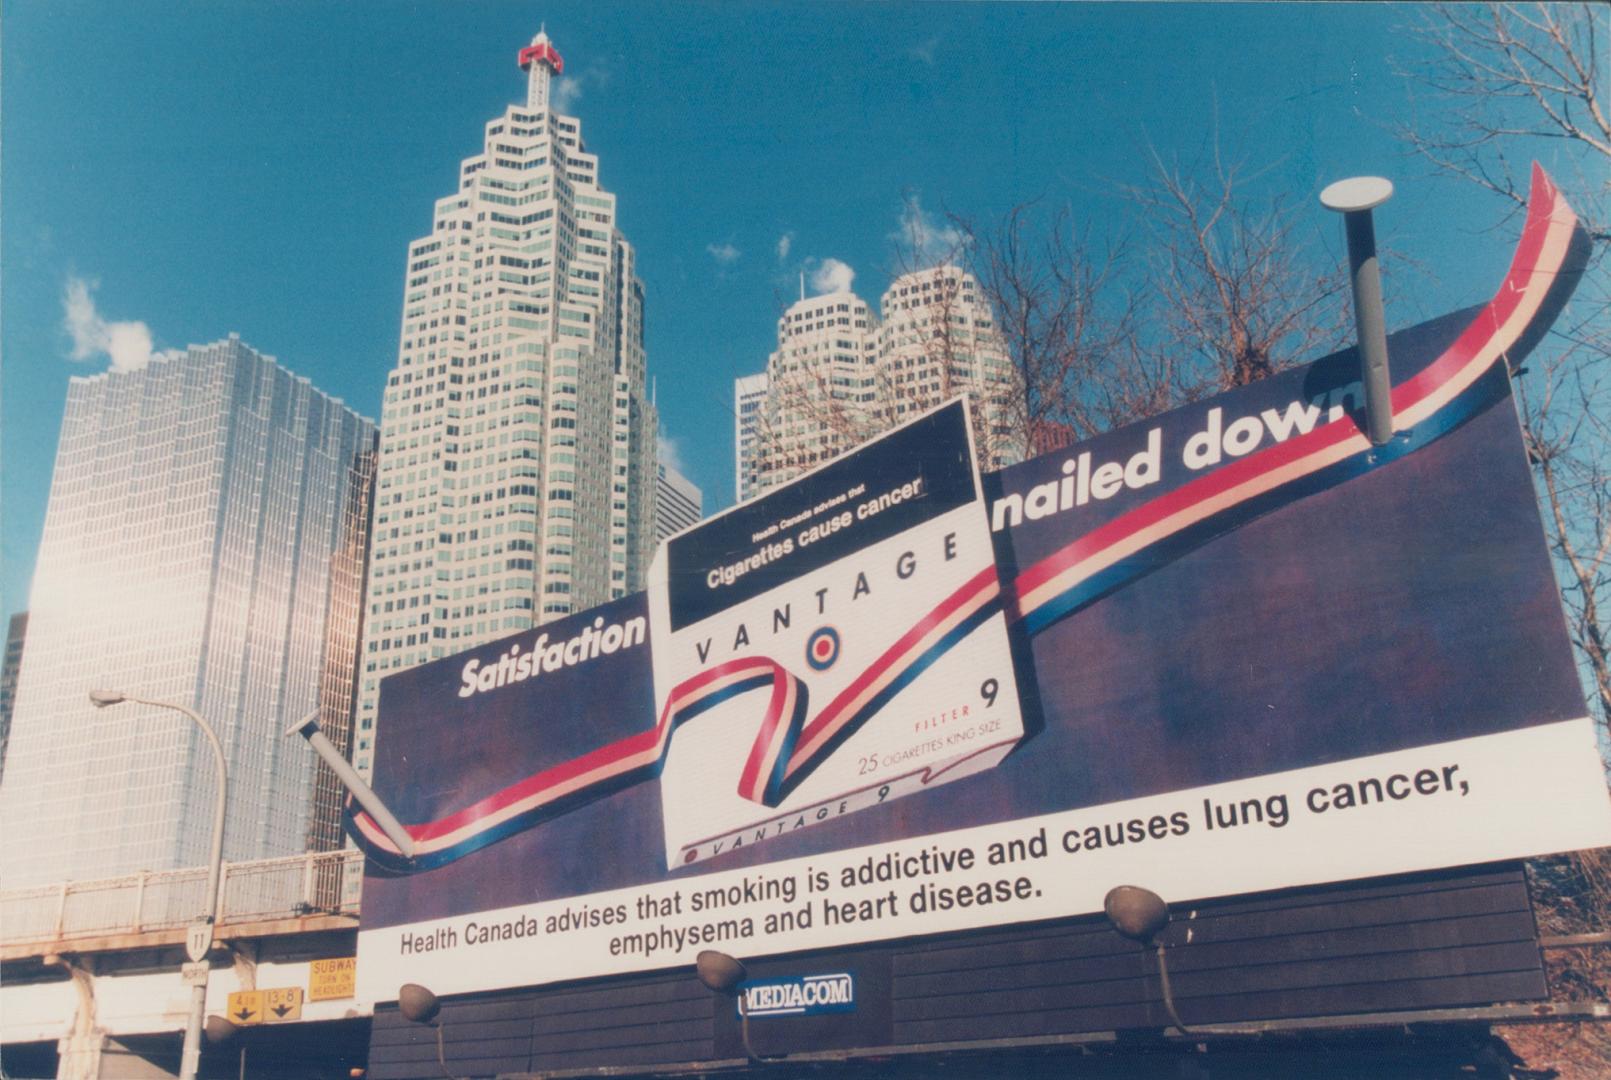 Advertising - 1997